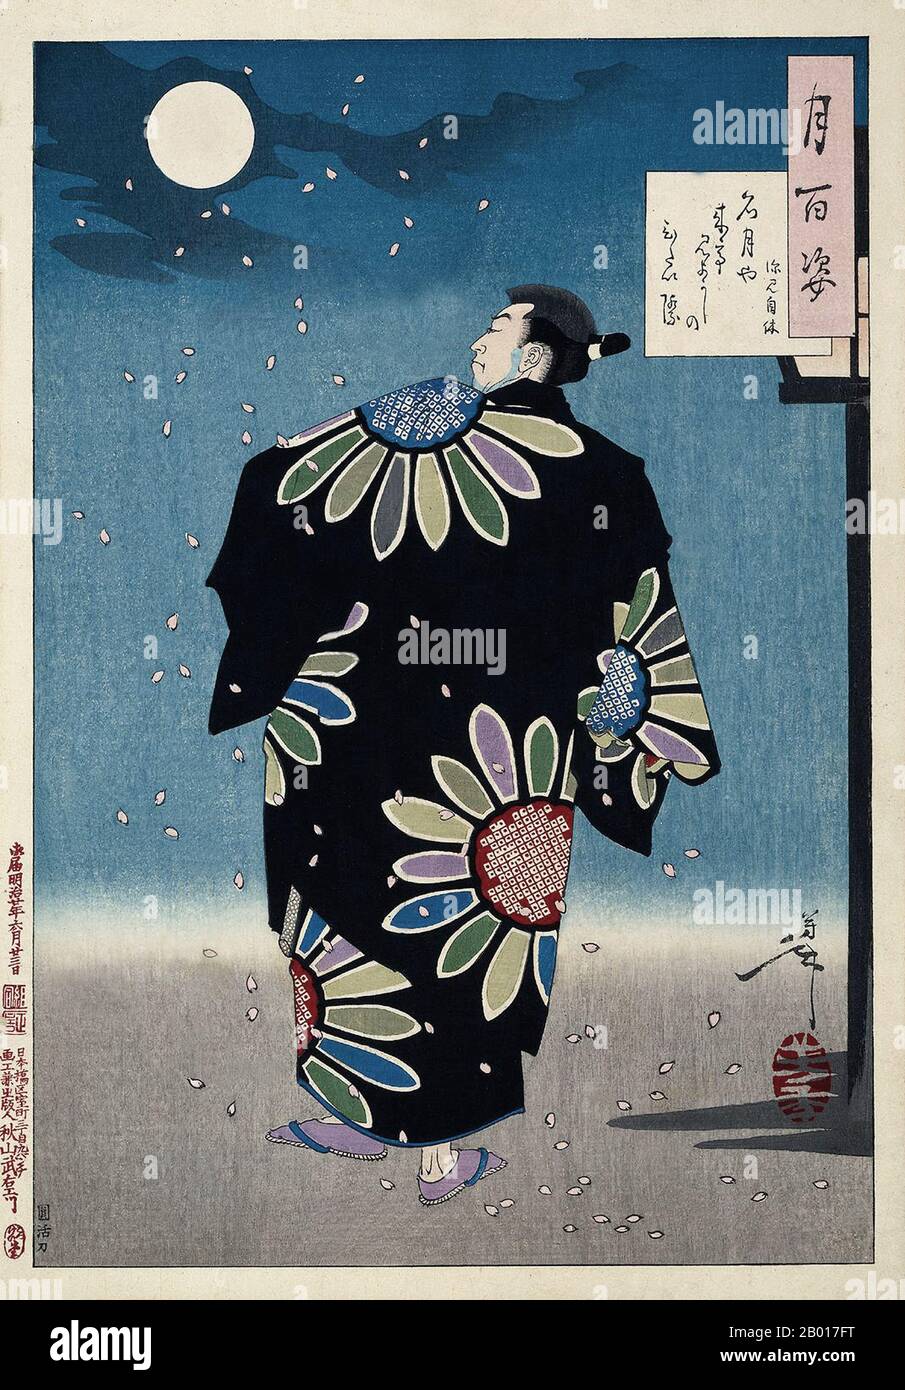 Japan: 'Fukami Jikyu'. Ukiyo-e-Holzschnitt aus der Serie 'hundert Aspekte des Mondes' von Tsukioka Yoshitoshi (30. April 1839 - 9. Juni 1892), 1887. Fukami Jikyu, ein japanischer fiktiver Held - ähnlich dem englischen Robin Hood - geht stolz in seinem eleganten Kimono, während Kirschblüten um ihn herfallen. Yoshitoshi schafft in diesem Holzschnitt nach der Edo-Zeit das Gefühl eines ruhigen Frühlingsabends.- Neben seiner Unterschrift in der Kartusche rechts oben auf dem Bild hat Yoshitoshi ein kurzes Gedicht eingefügt. Stockfoto